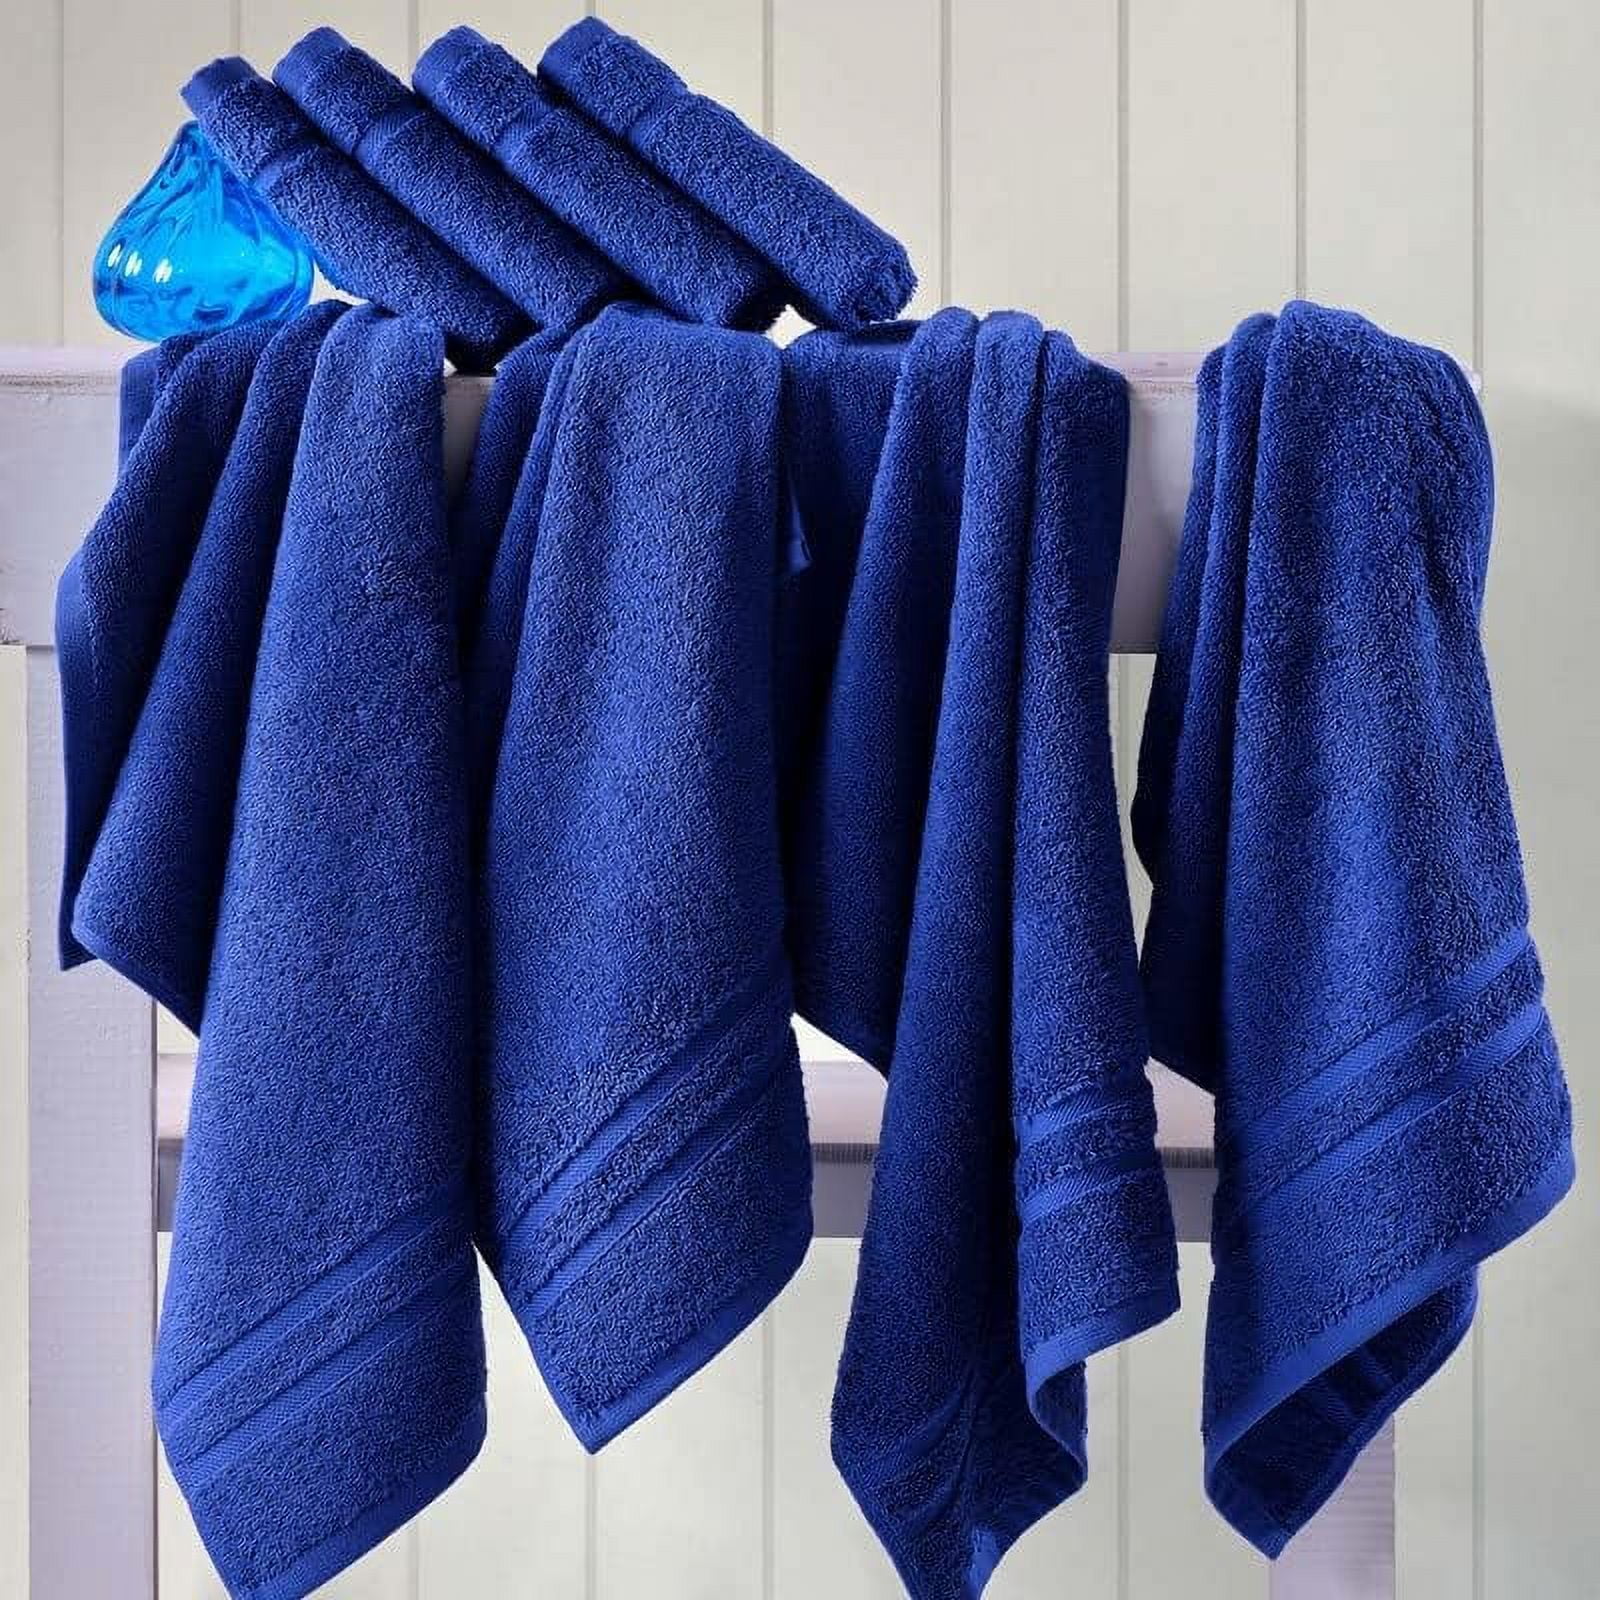 Hammam Linen Light Blue Hand Towels Set of 4 – Luxury Cotton Hand